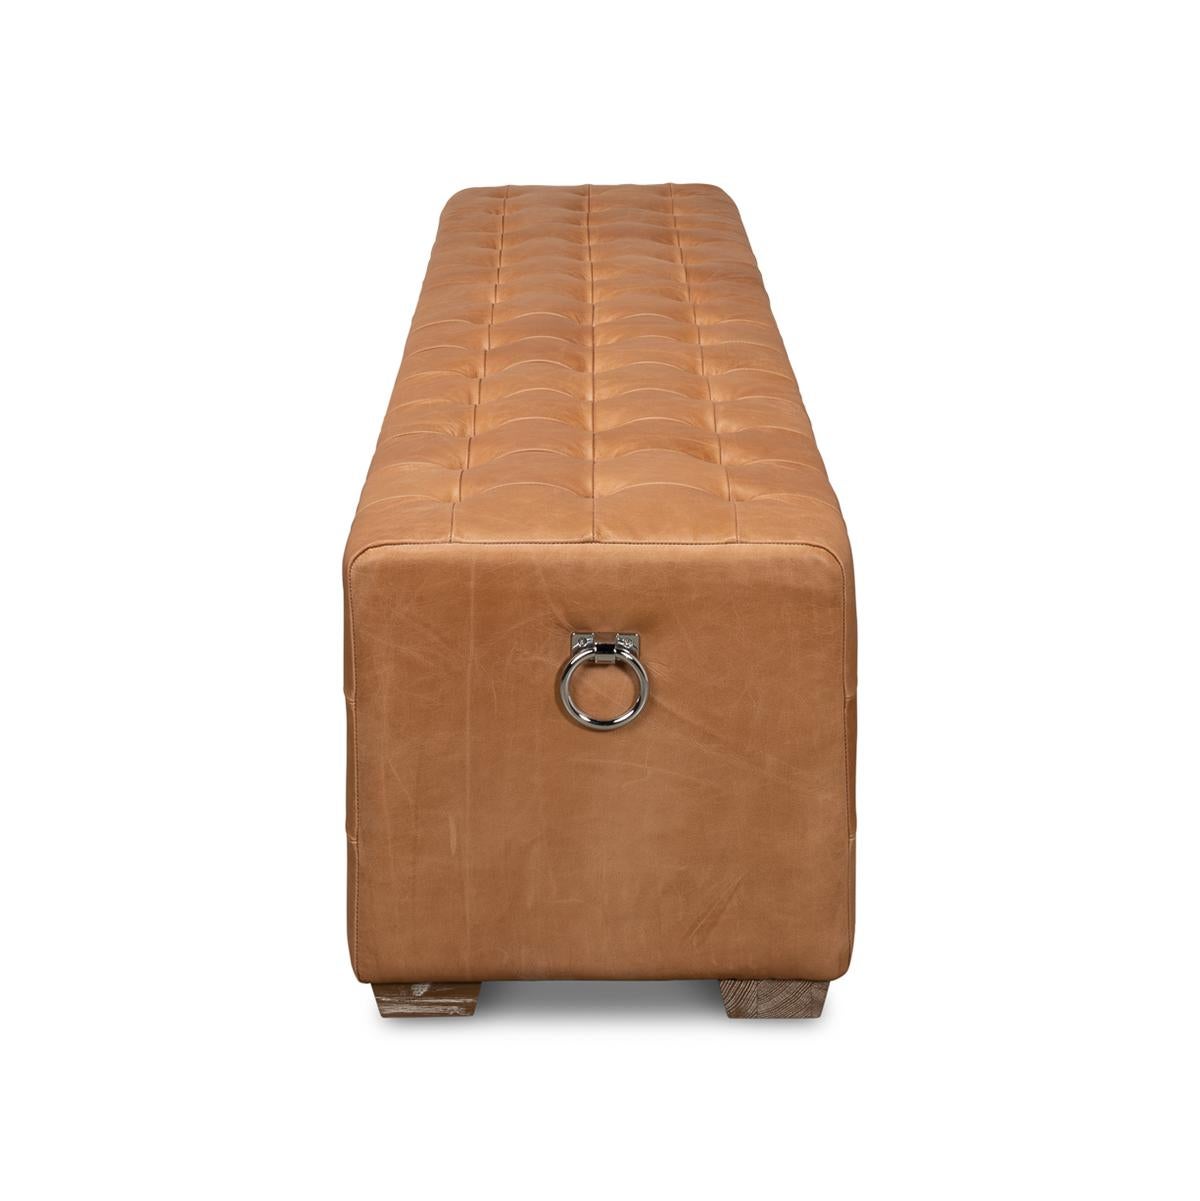 Moderne The Moderns Bench Upholstered Leather Tufted en vente